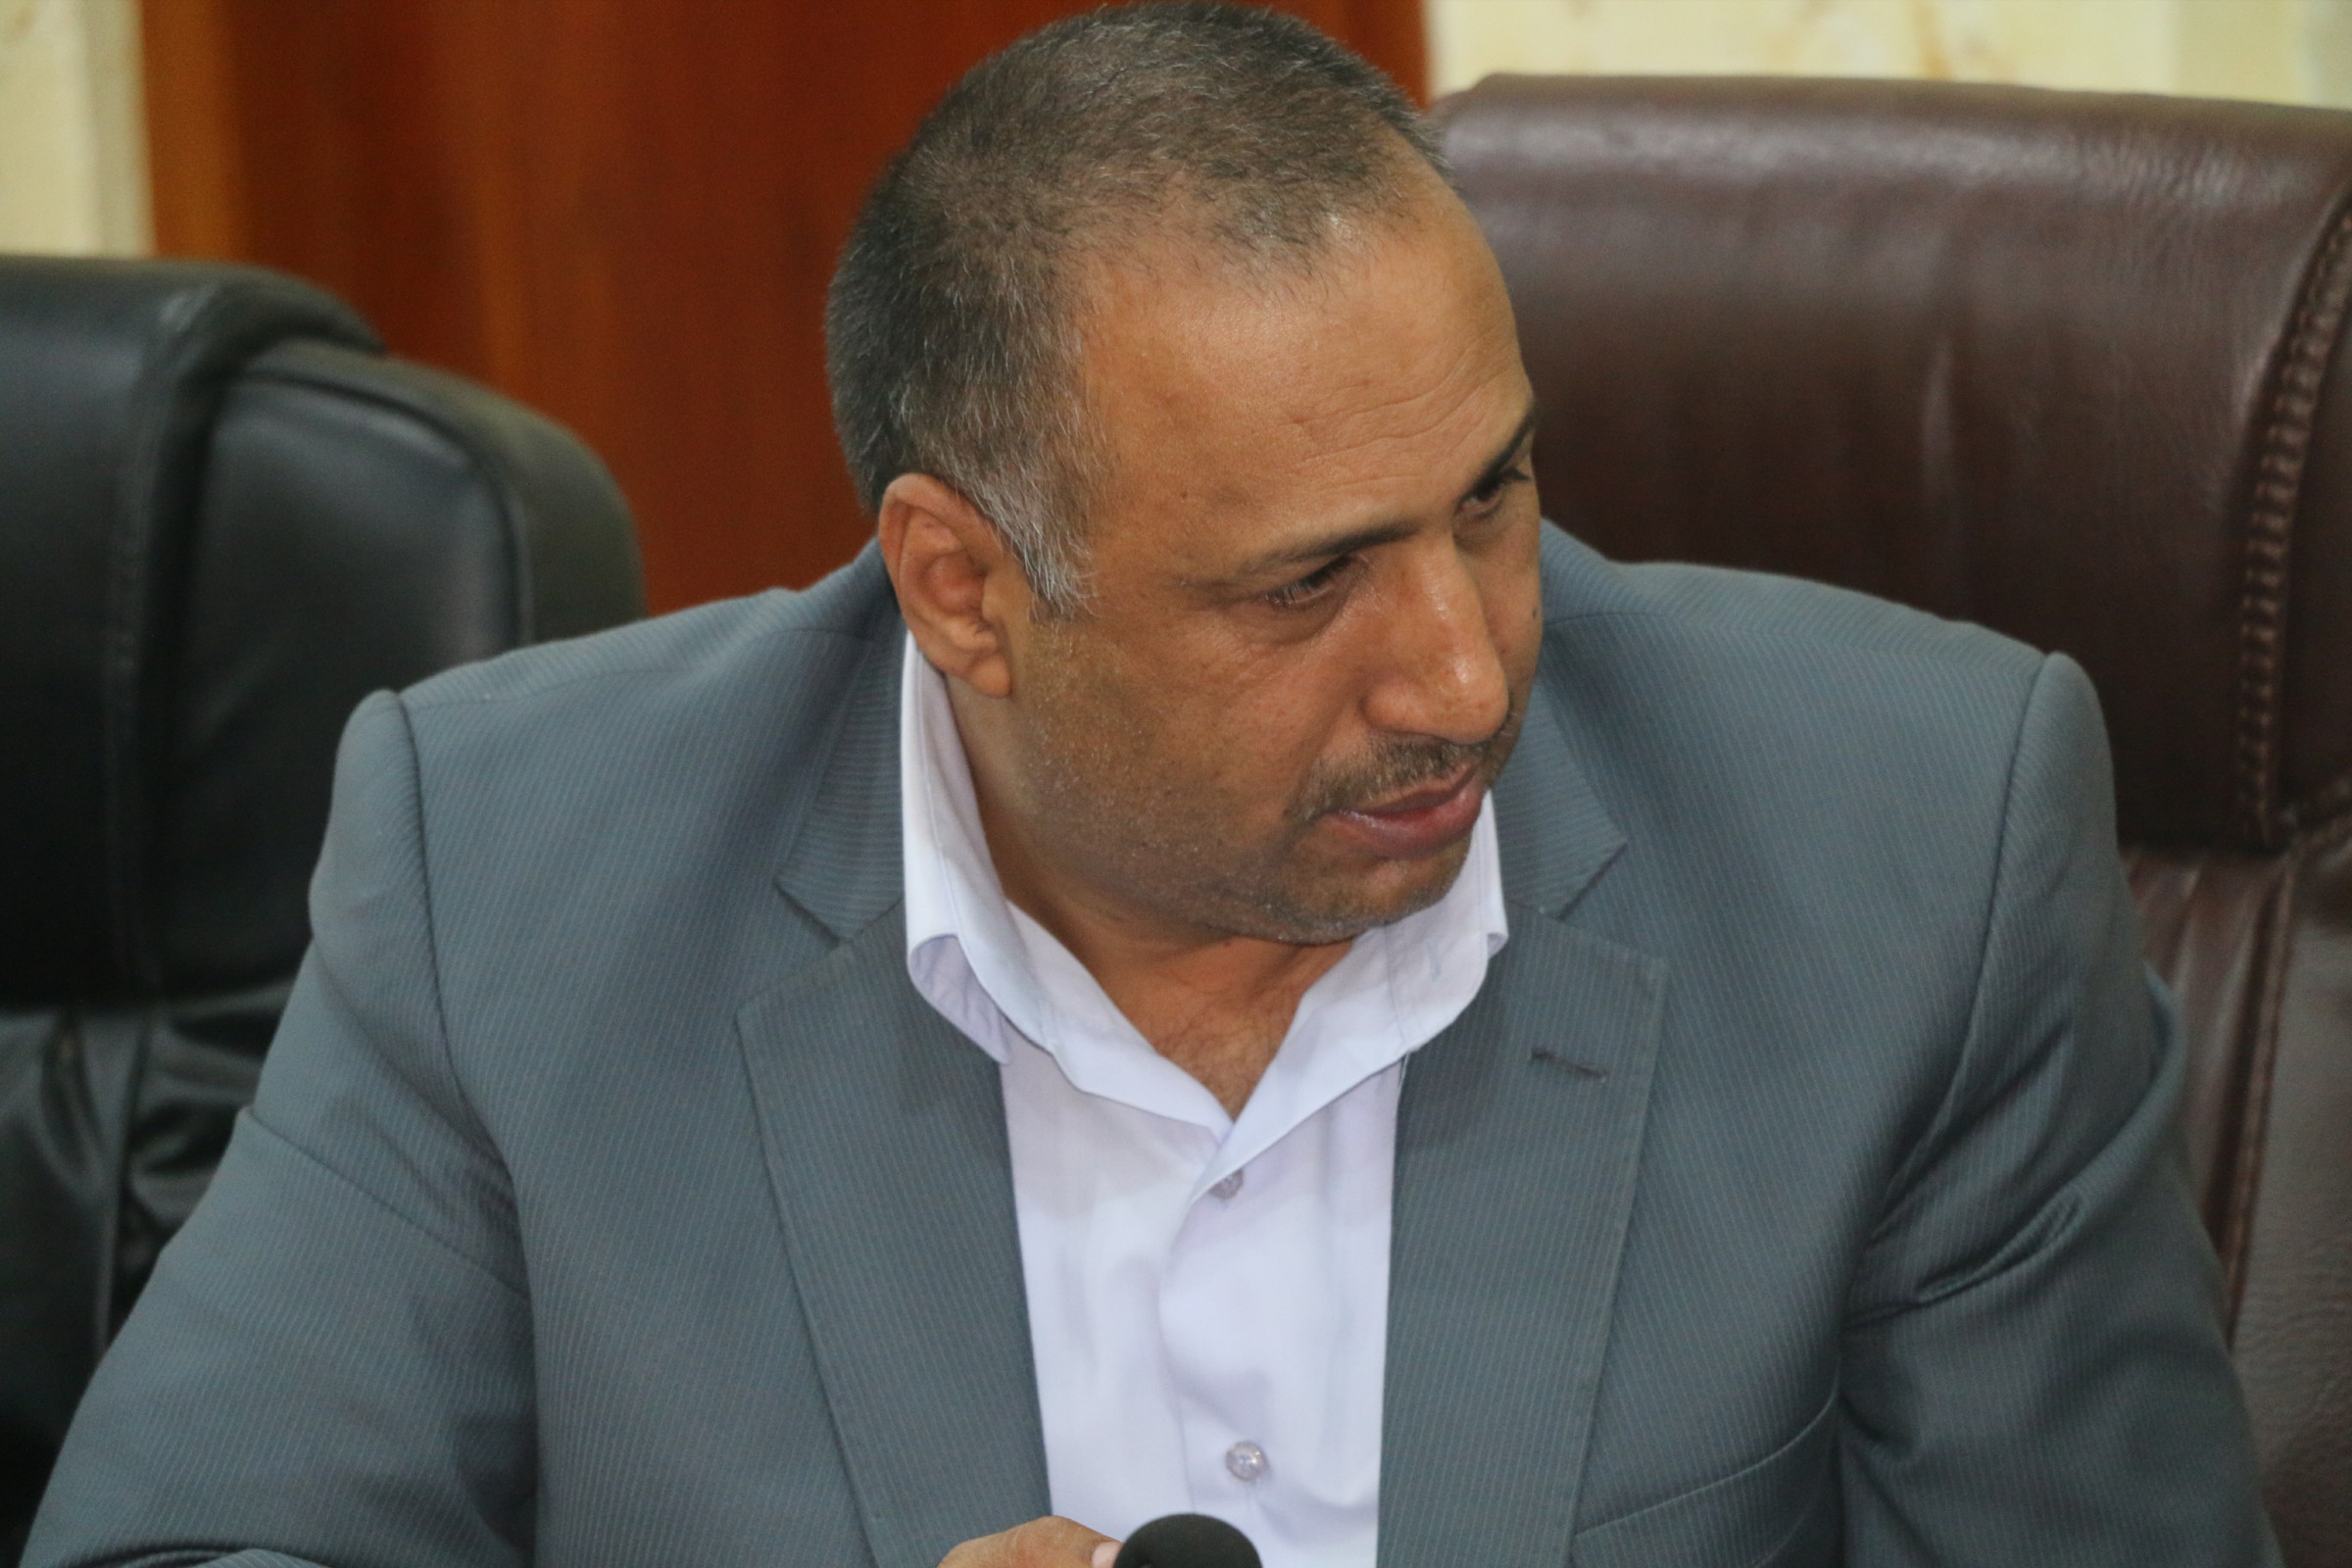 عضو مجلس الأنبار راجع بركات يستقيل من منصبه